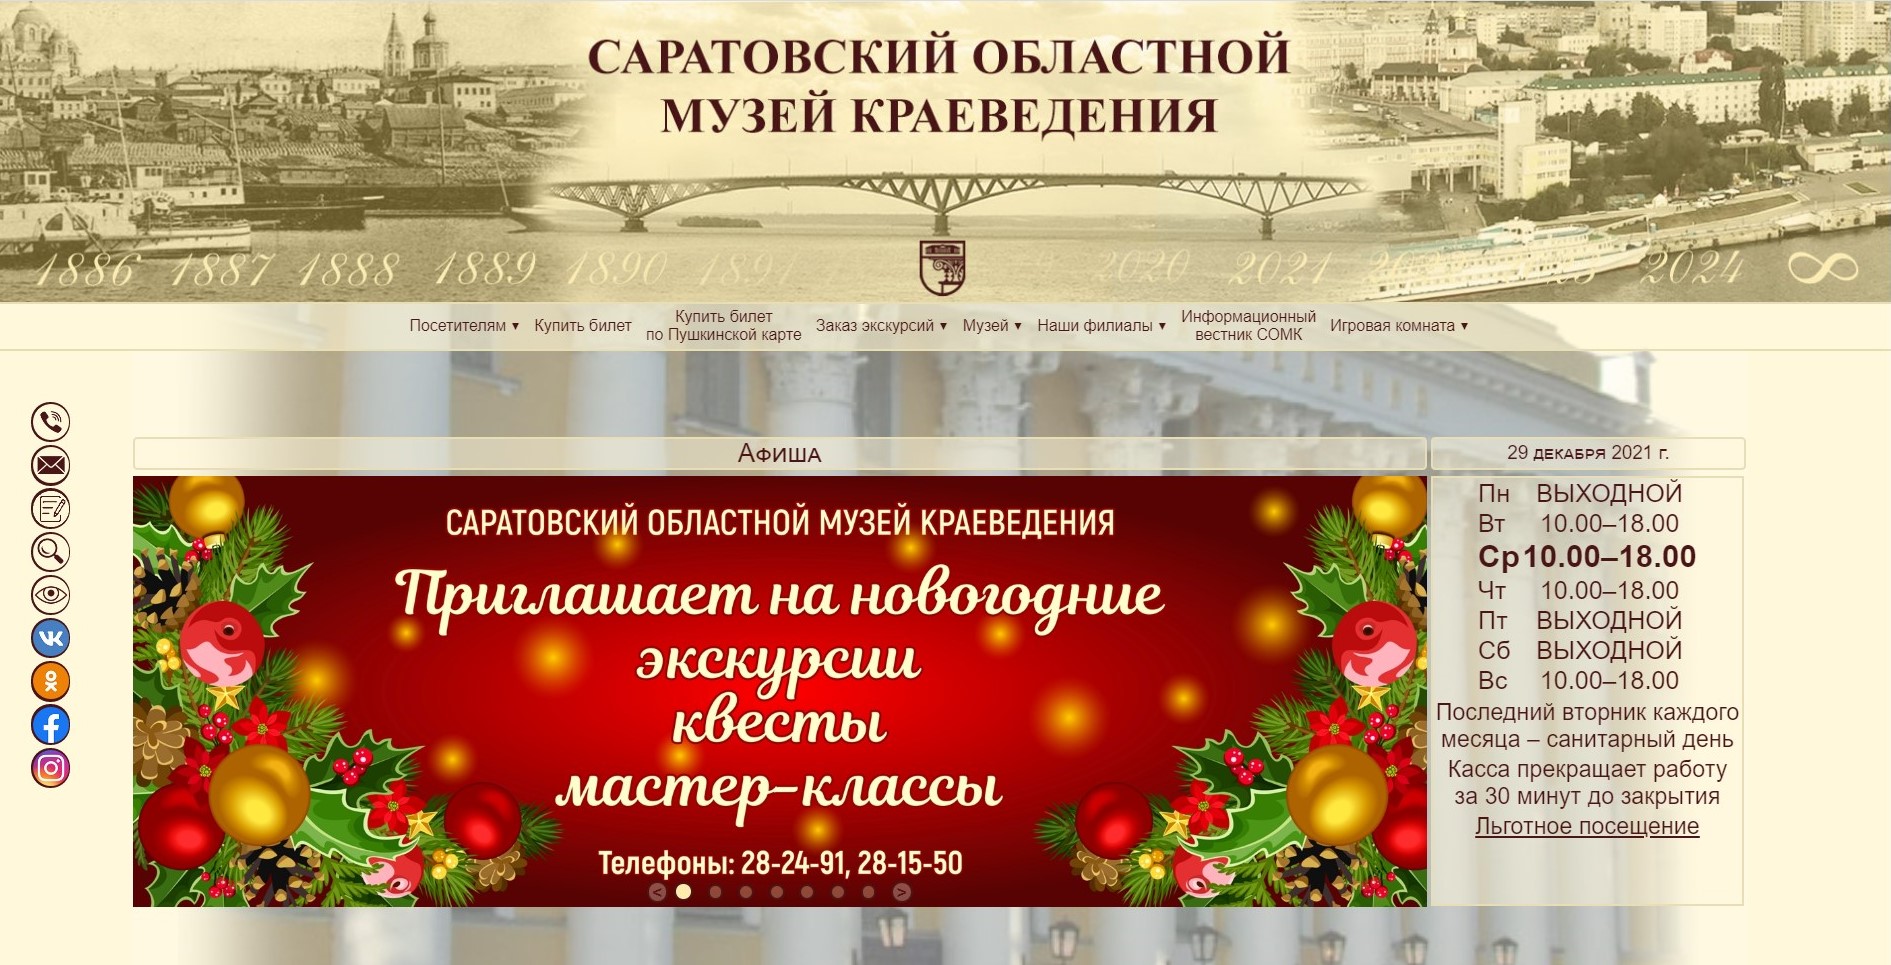 Новая версия официального сайта Саратовского областного музея краеведения